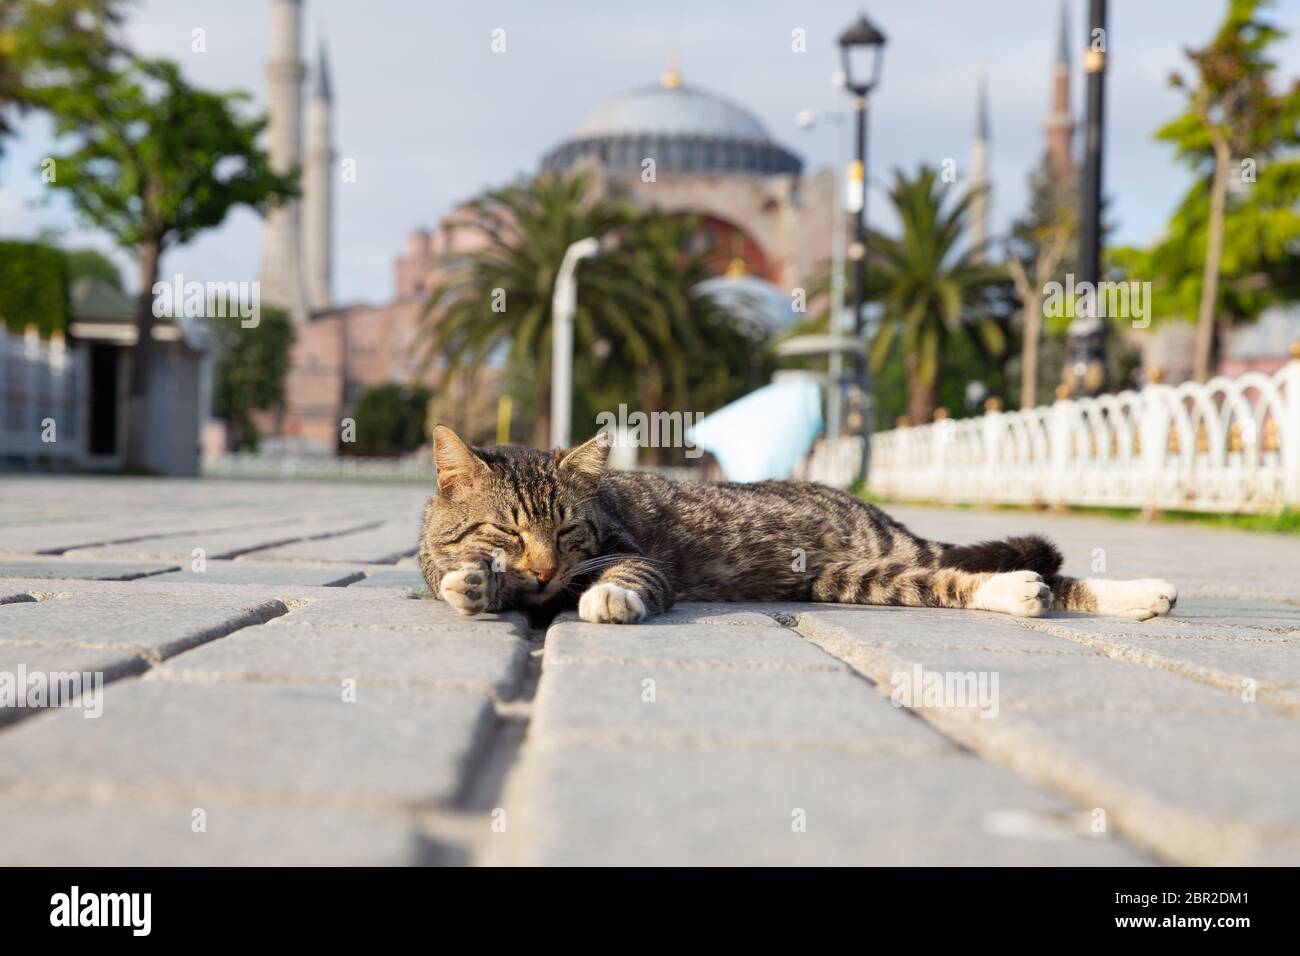 ISTANBUL, TÜRKEI - 13. MAI 2020: Während der Coronavirus Pandemie liegt eine Katze auf dem leeren Sultanahmet-Platz Stockfoto